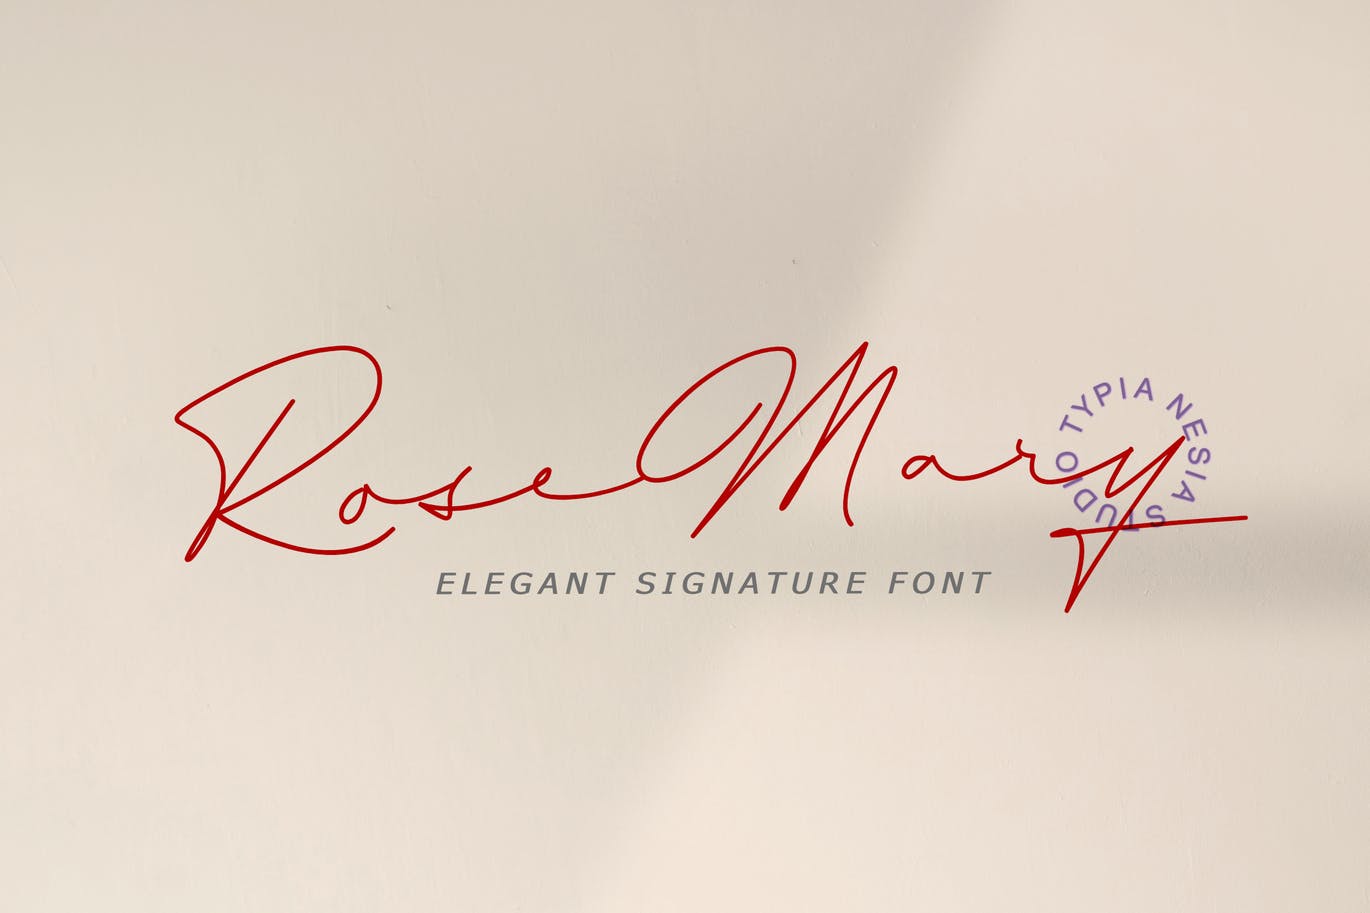 漂亮的钢笔手写签名英文字体 Rosemary Signatu